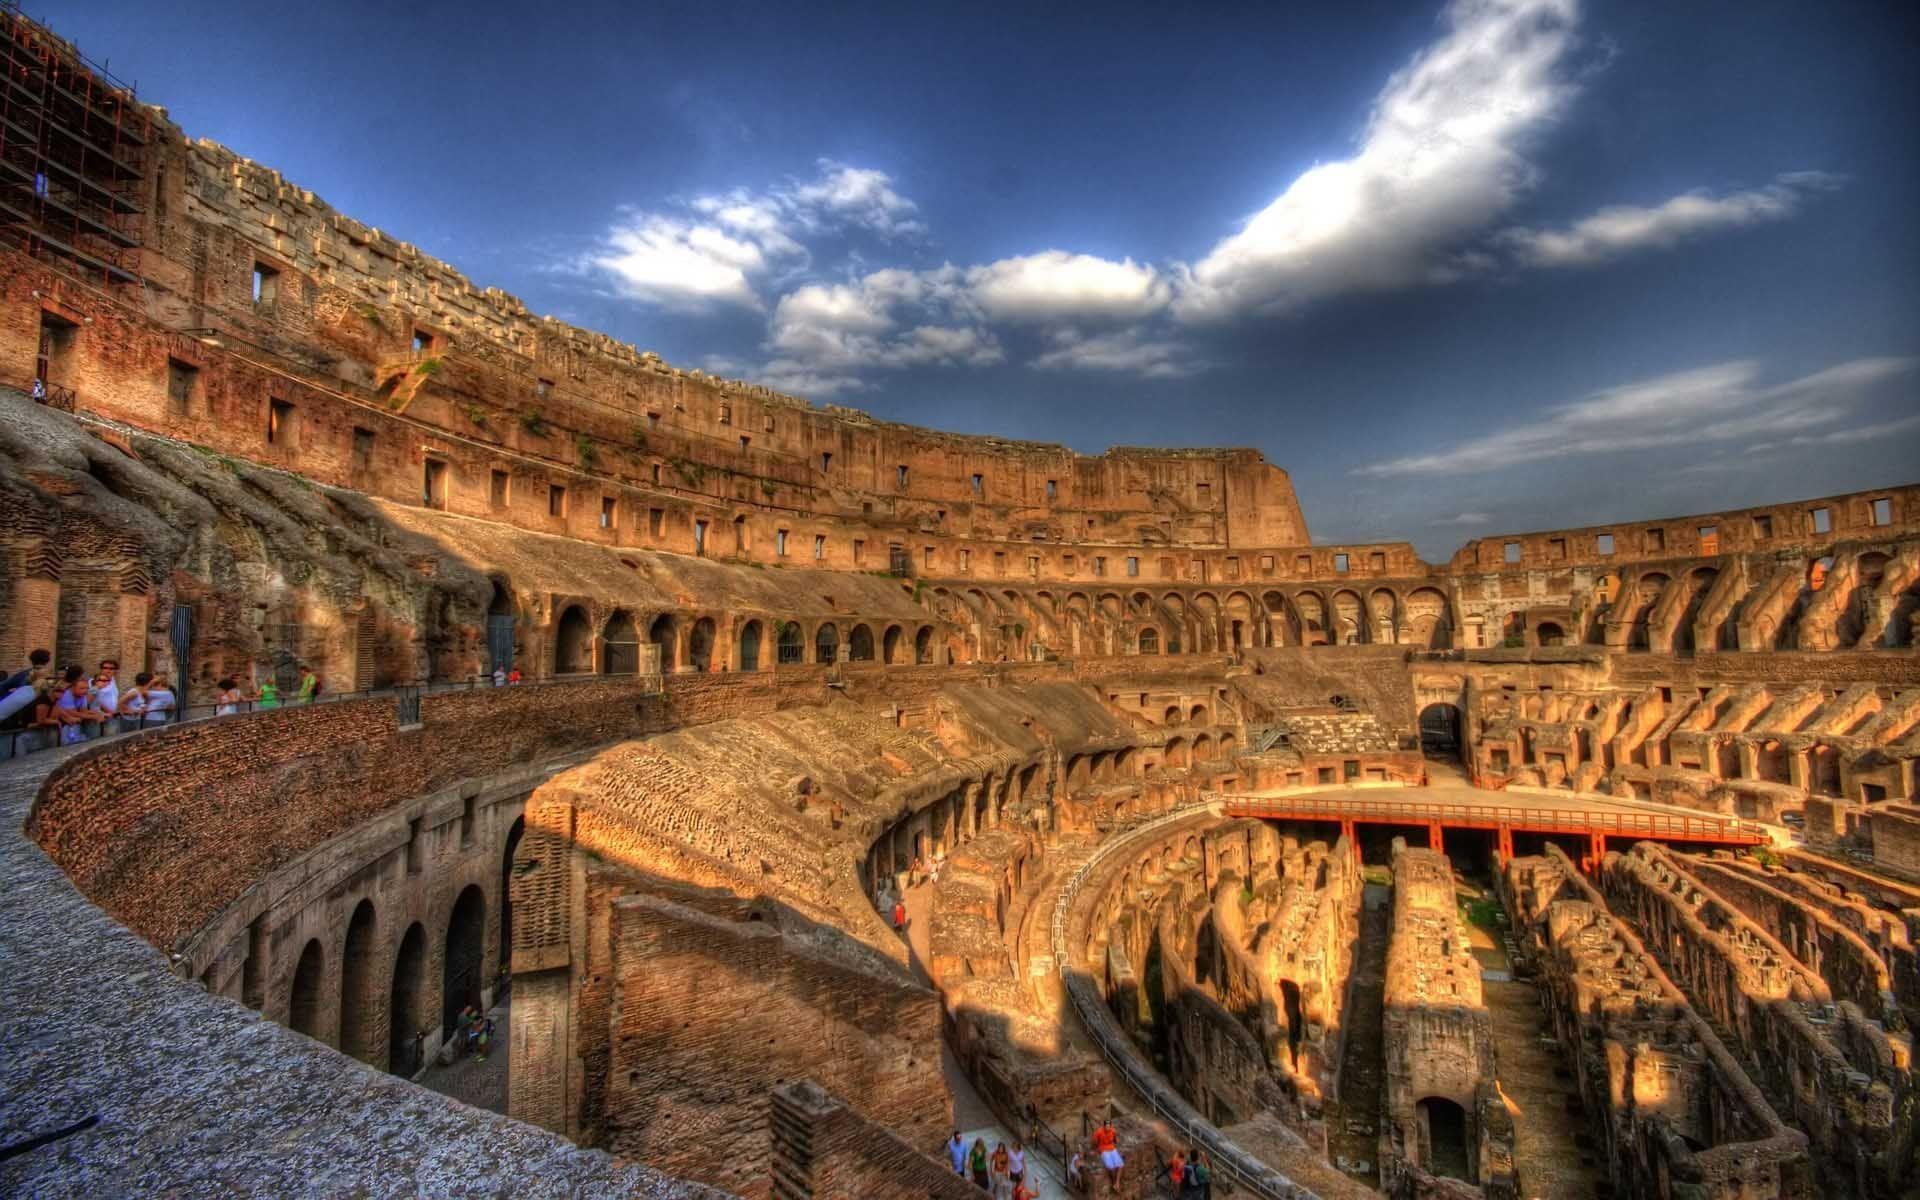 Colosseum Roma Desktop Wallpaper. HD Travel Wallpaper for Mobile